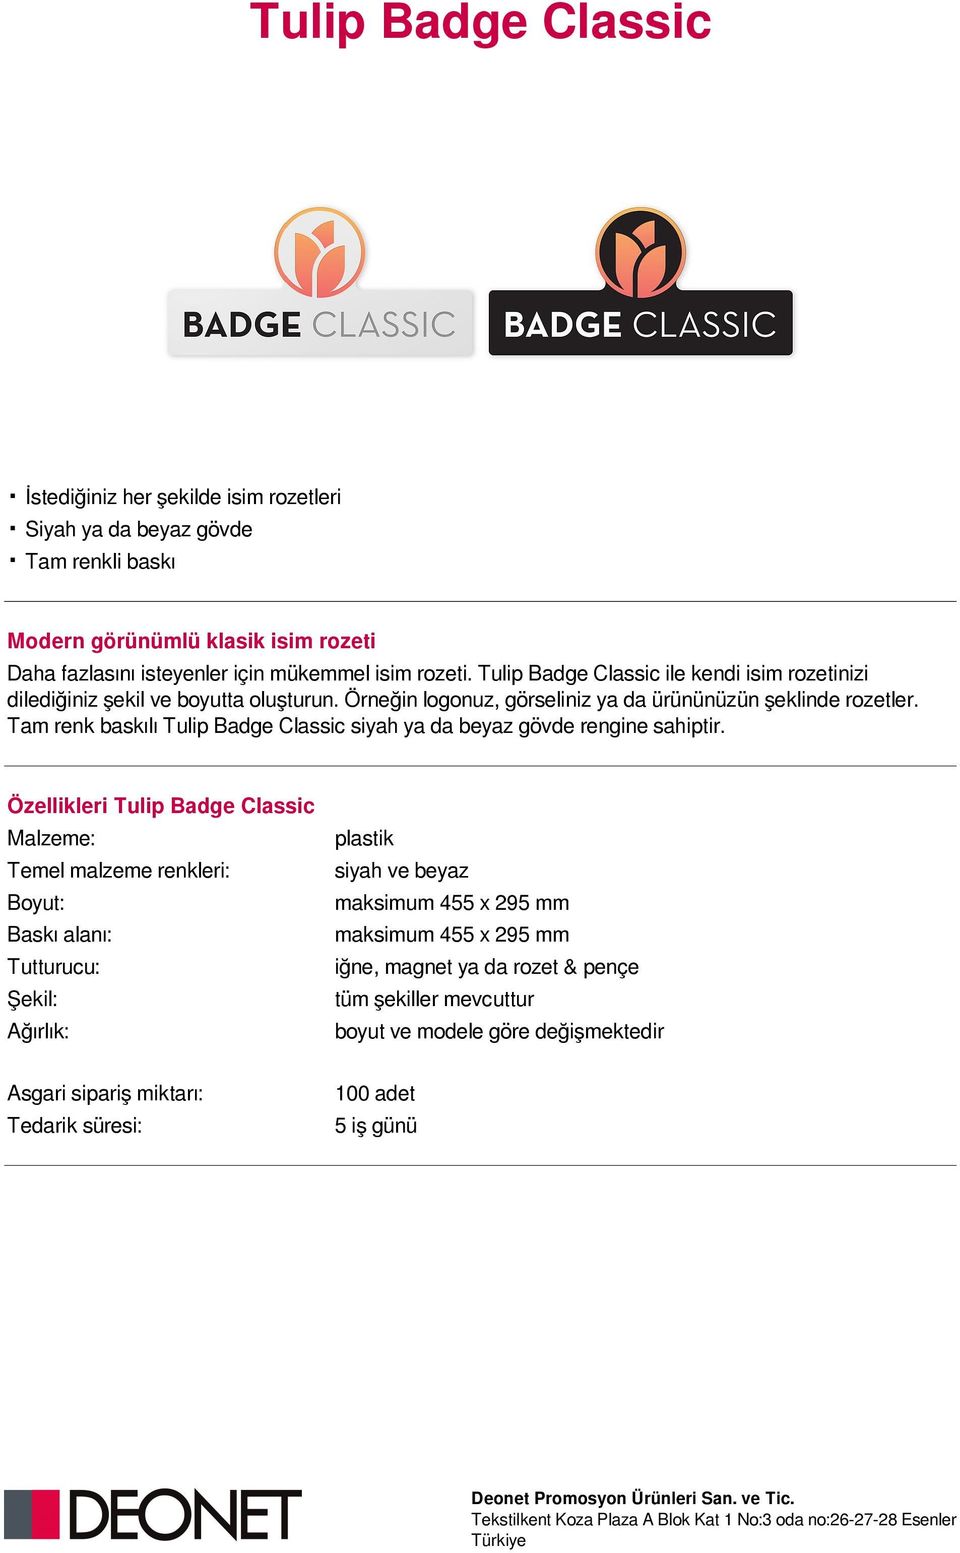 Tulip Badge Classic ile kendi isim rozetinizi dilediğiniz şekil ve boyutta oluşturun. Örneğin logonuz, görseliniz ya da ürününüzün şeklinde rozetler.